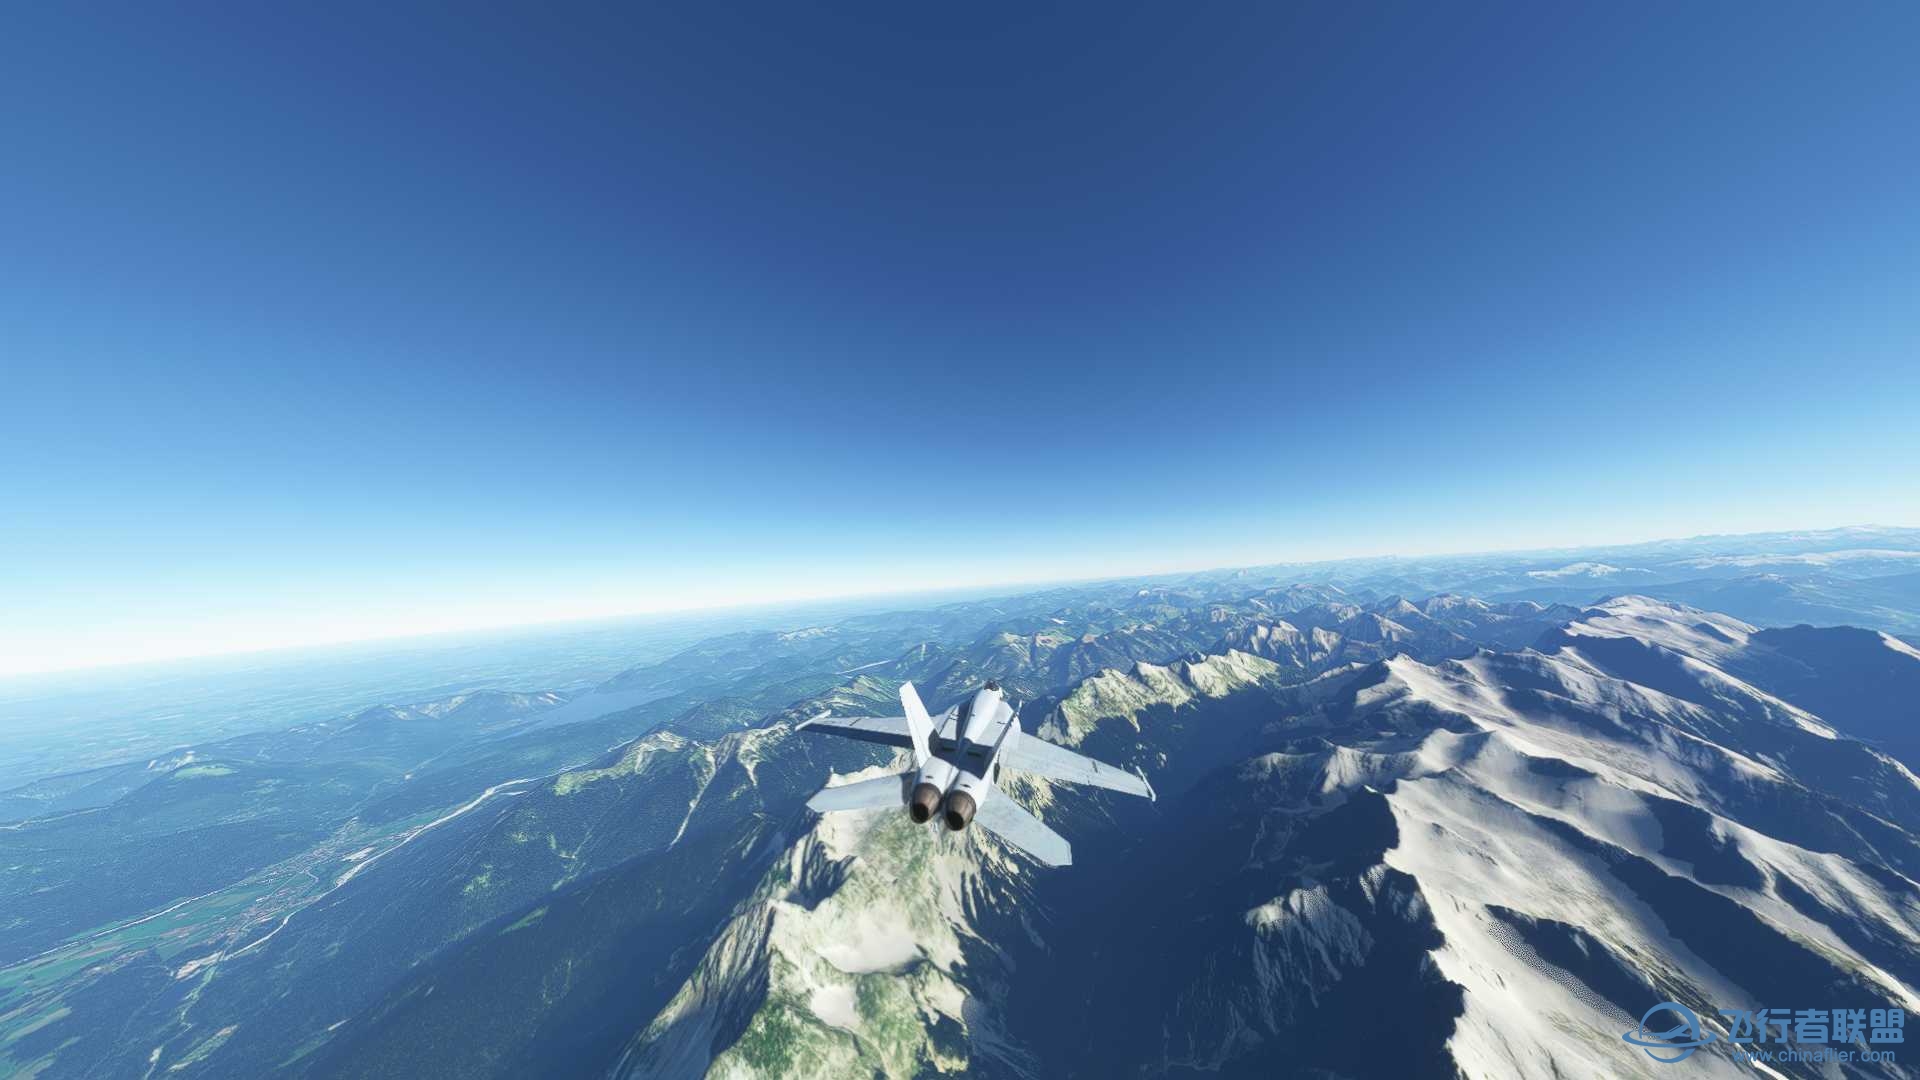 阿尔卑斯山脉附近飞行无法进行游戏-1162 